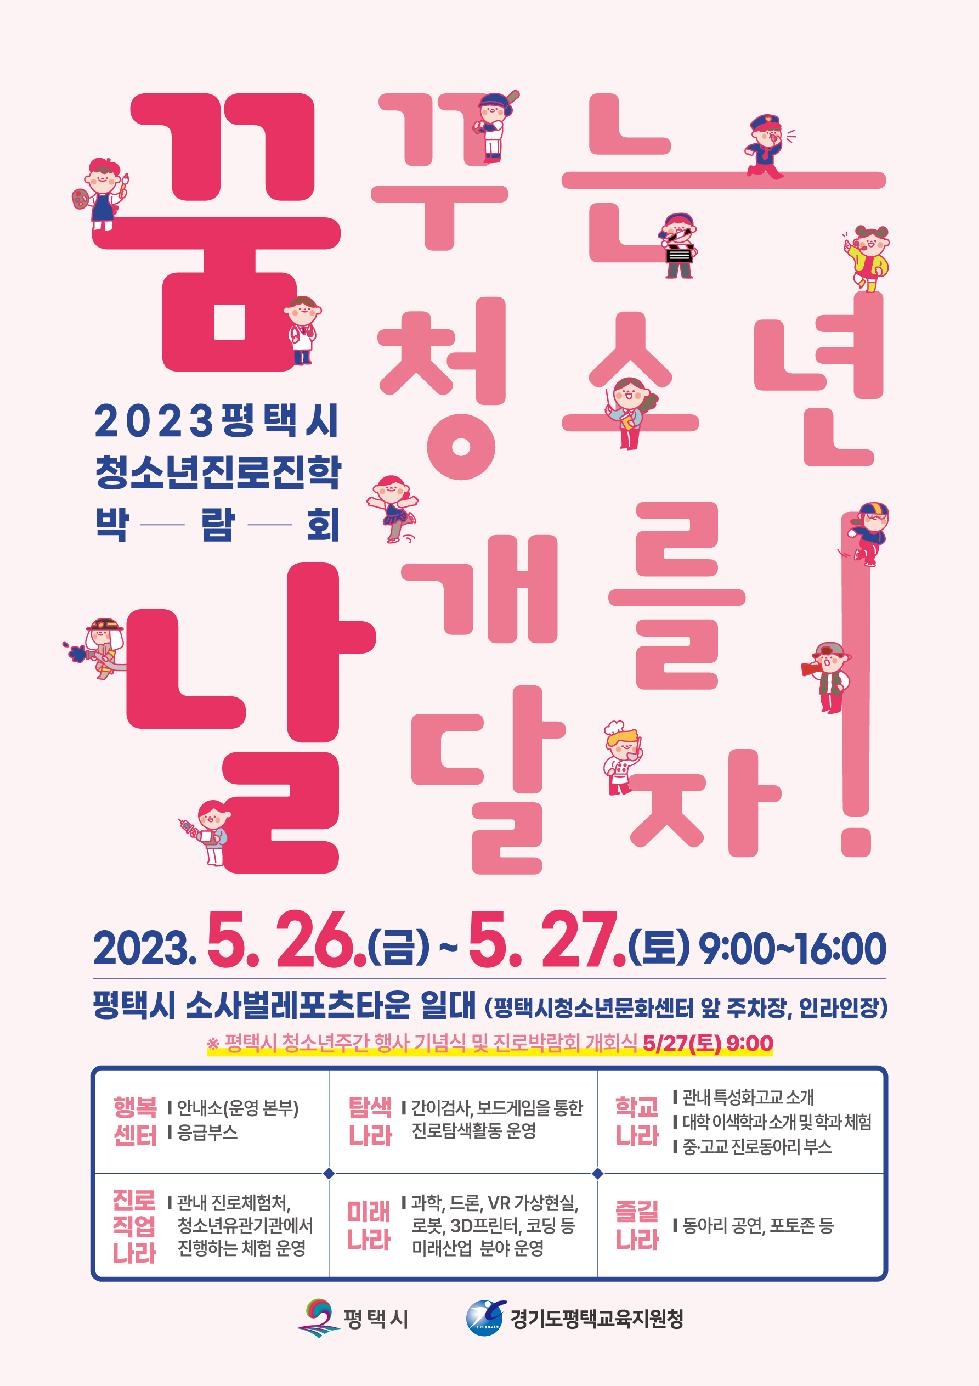 평택시, ‘2023 평택시 청소년진로진학박람회 꿈날’ 개최